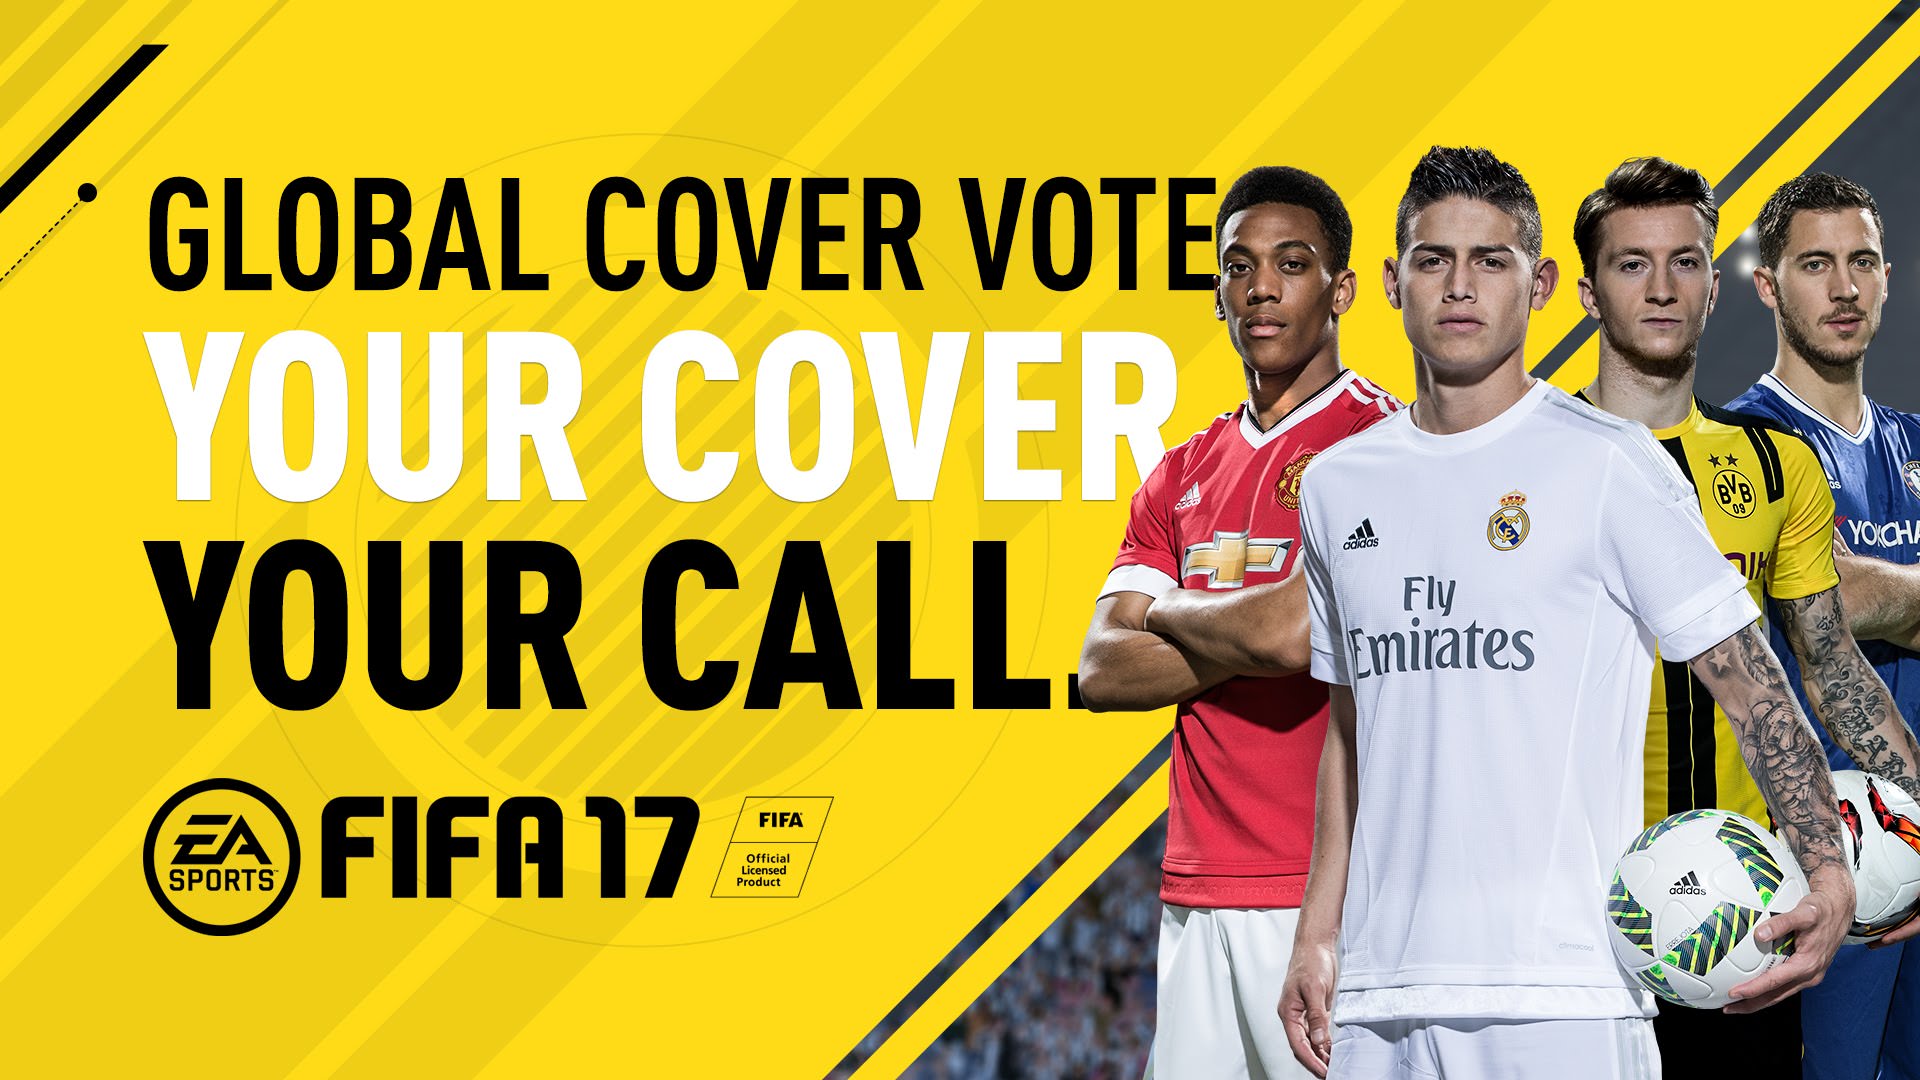 FIFA 17 Cover Vote